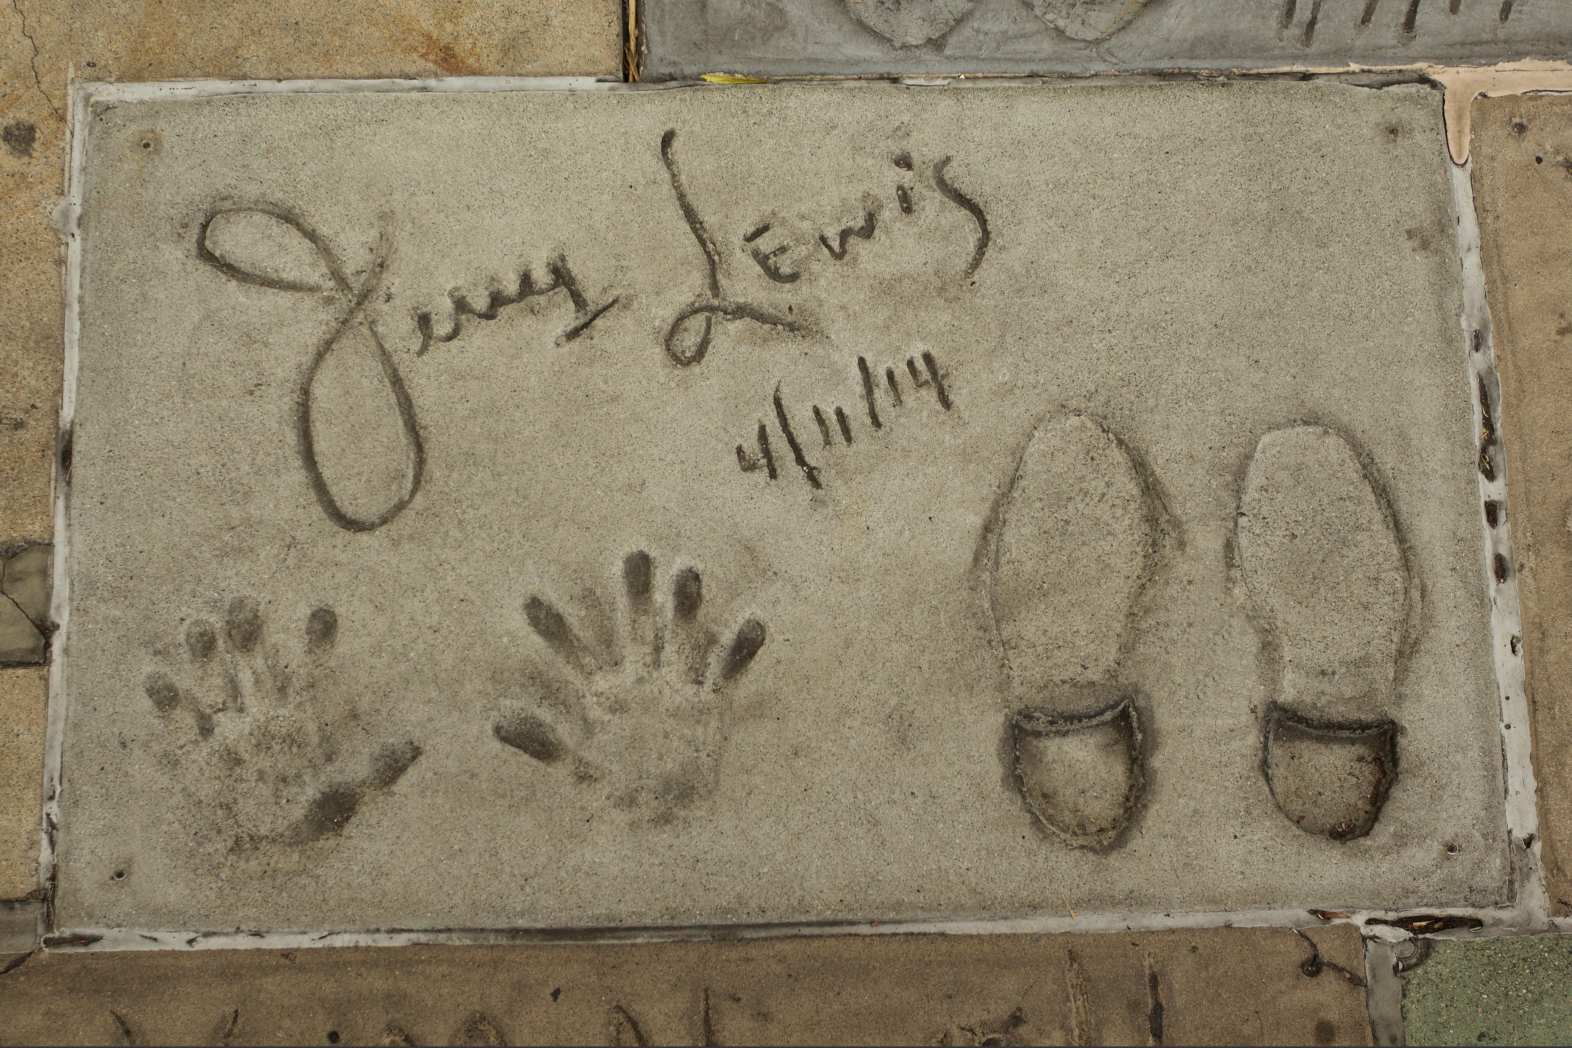 Một đài tưởng niệm tạm thời đã xuất hiện dành cho diễn viên hài, diễn viên và nghệ sĩ giải trí huyền thoại quá cố Jerry Lewis xung quanh dấu tay và chân của ông trên Đại lộ Danh vọng Hollywood ở Los Angeles khi ông qua đời vào năm 2017.